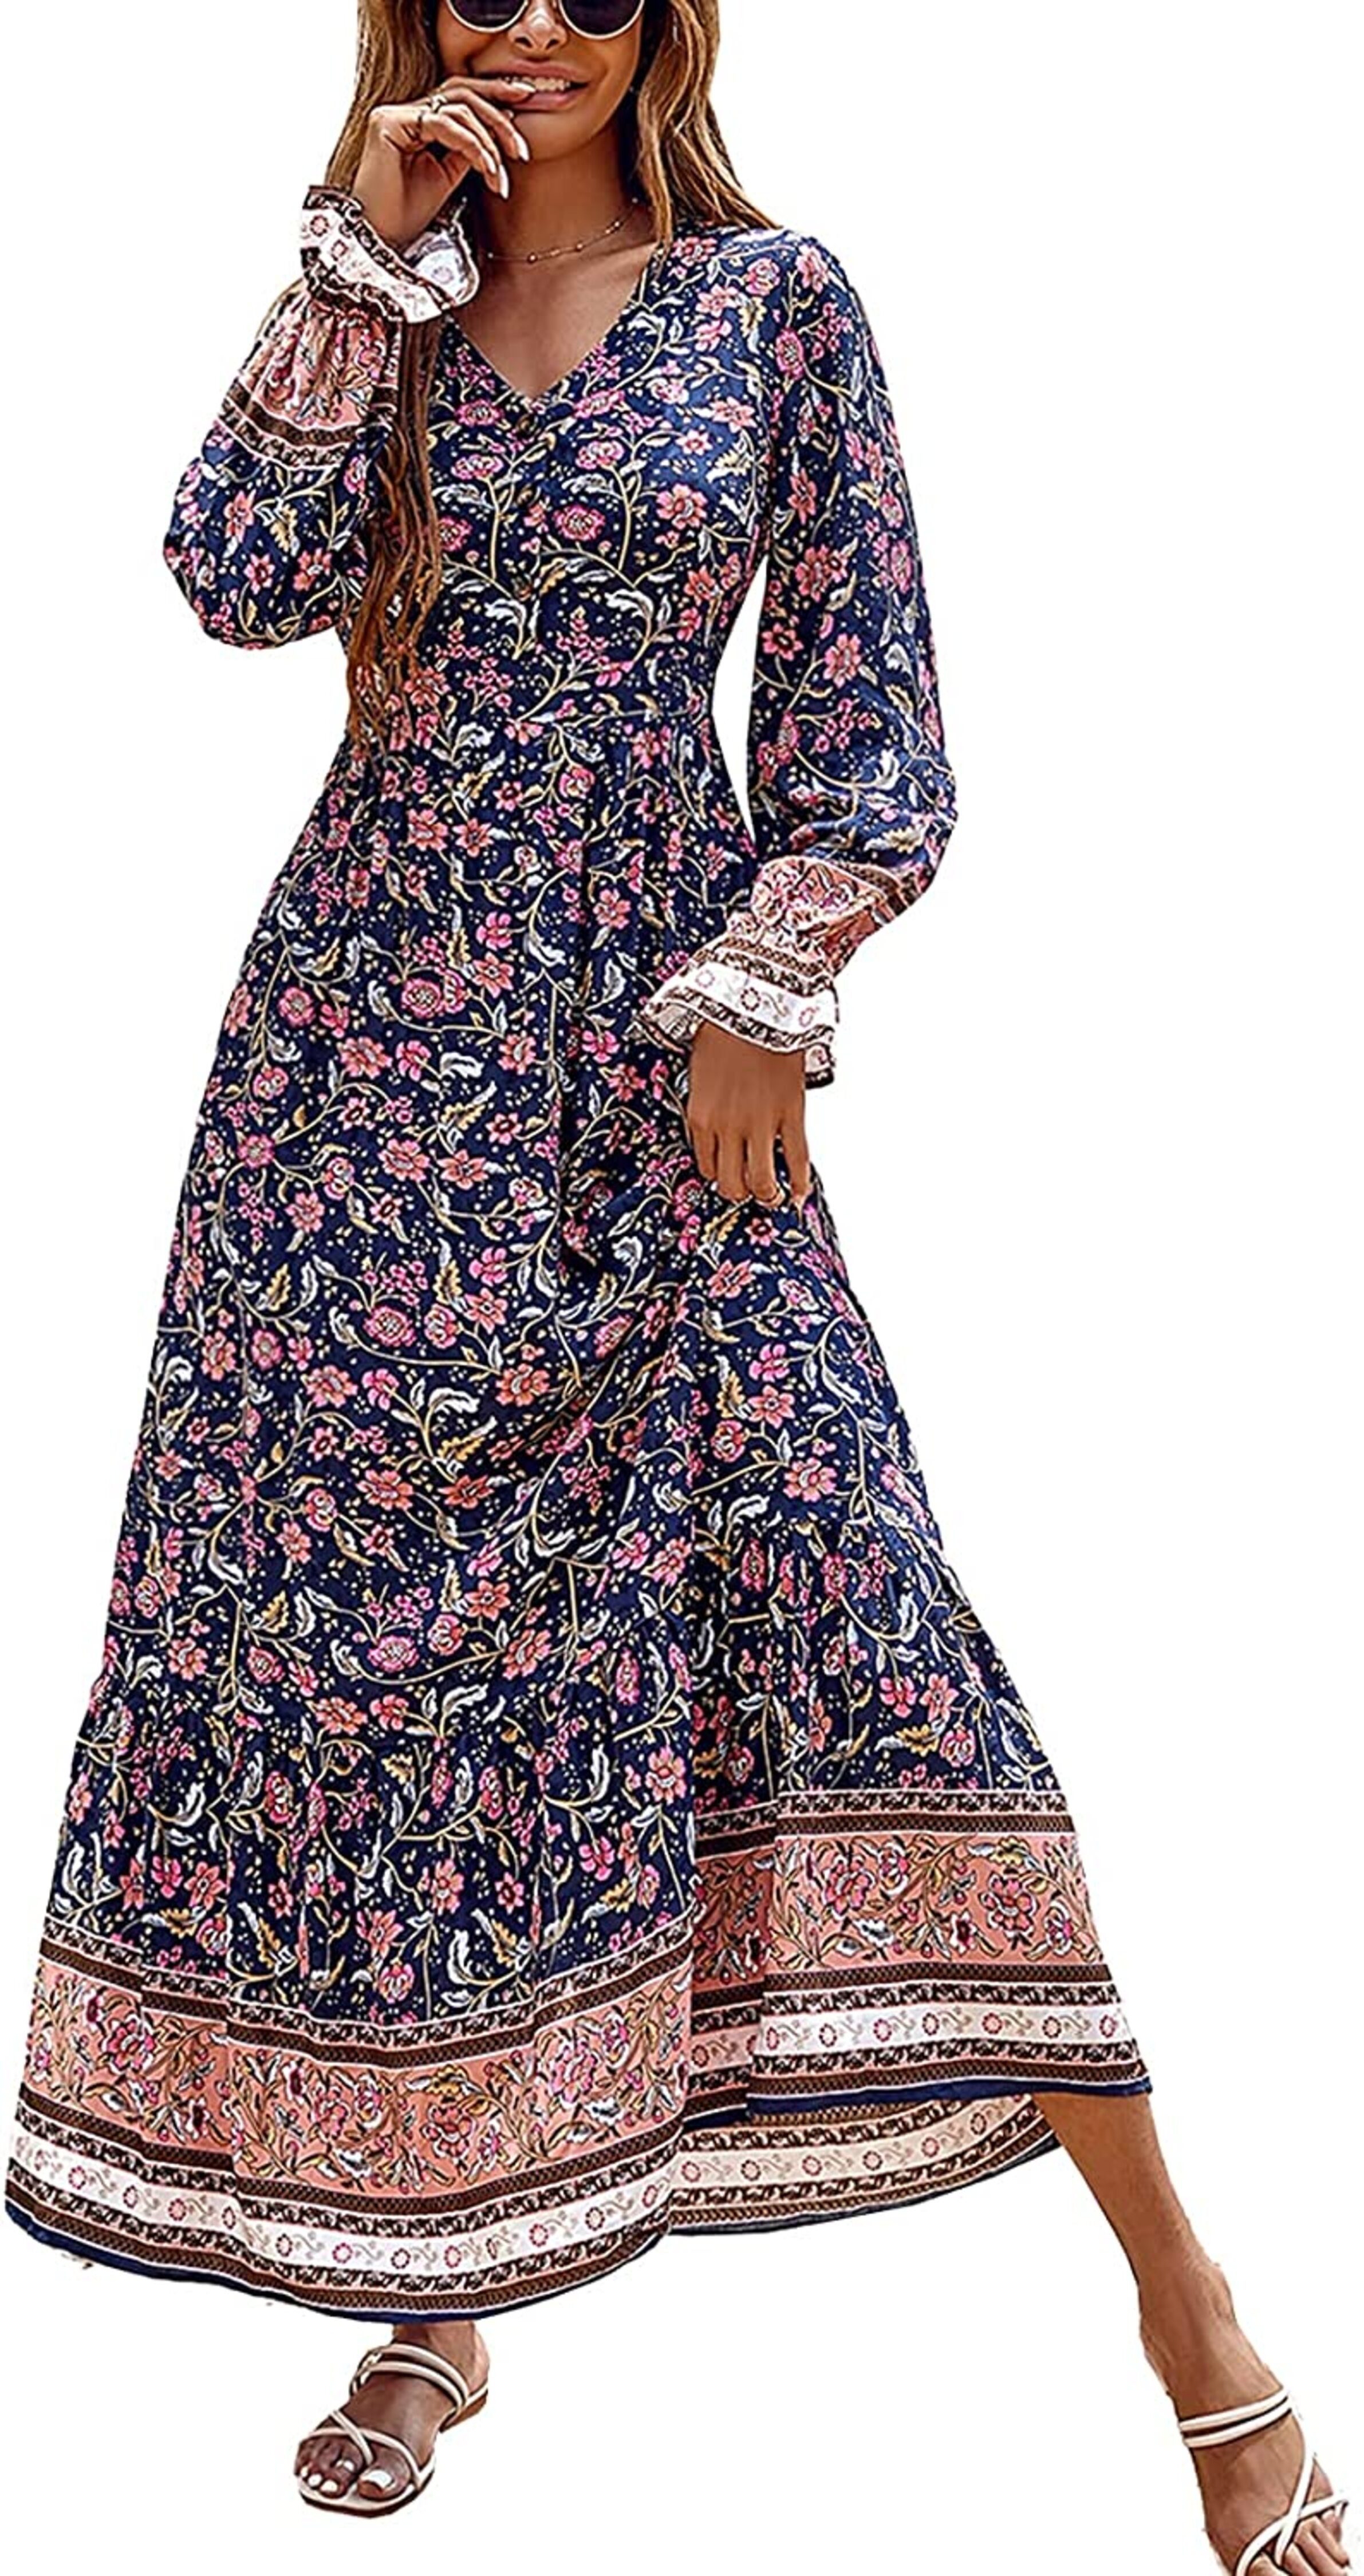 Mmgoqqt Jerseykleid »Damen Langarm/Kurzarm V-Ausschnitt Kleider Casual Boho  Kleid Maxikleid mit Taschen Partykleid« online kaufen | OTTO